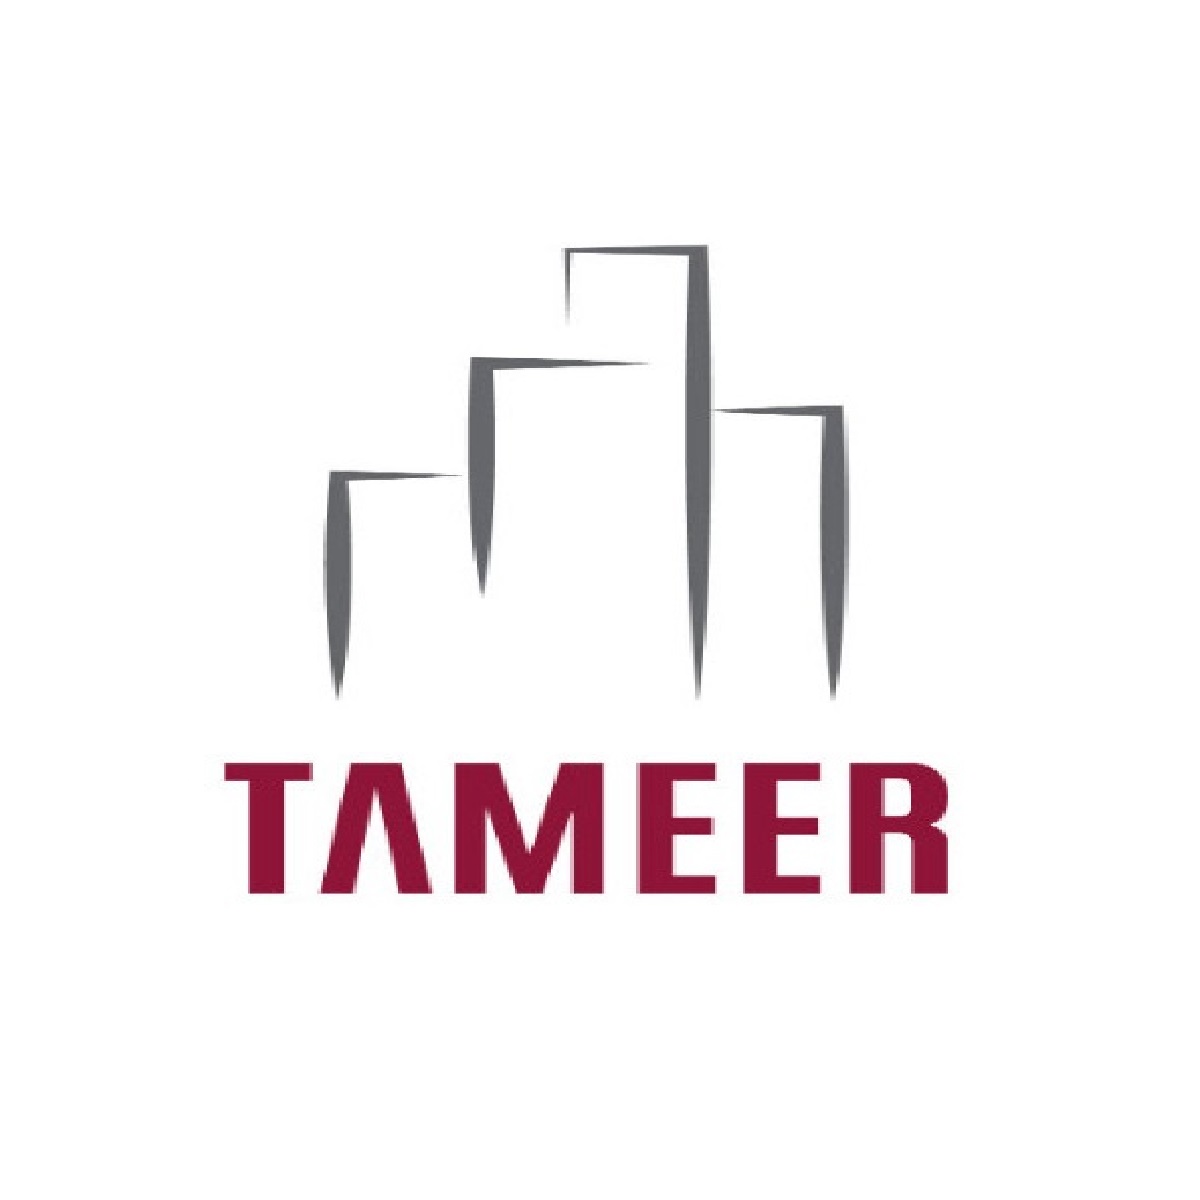 Tameer Group